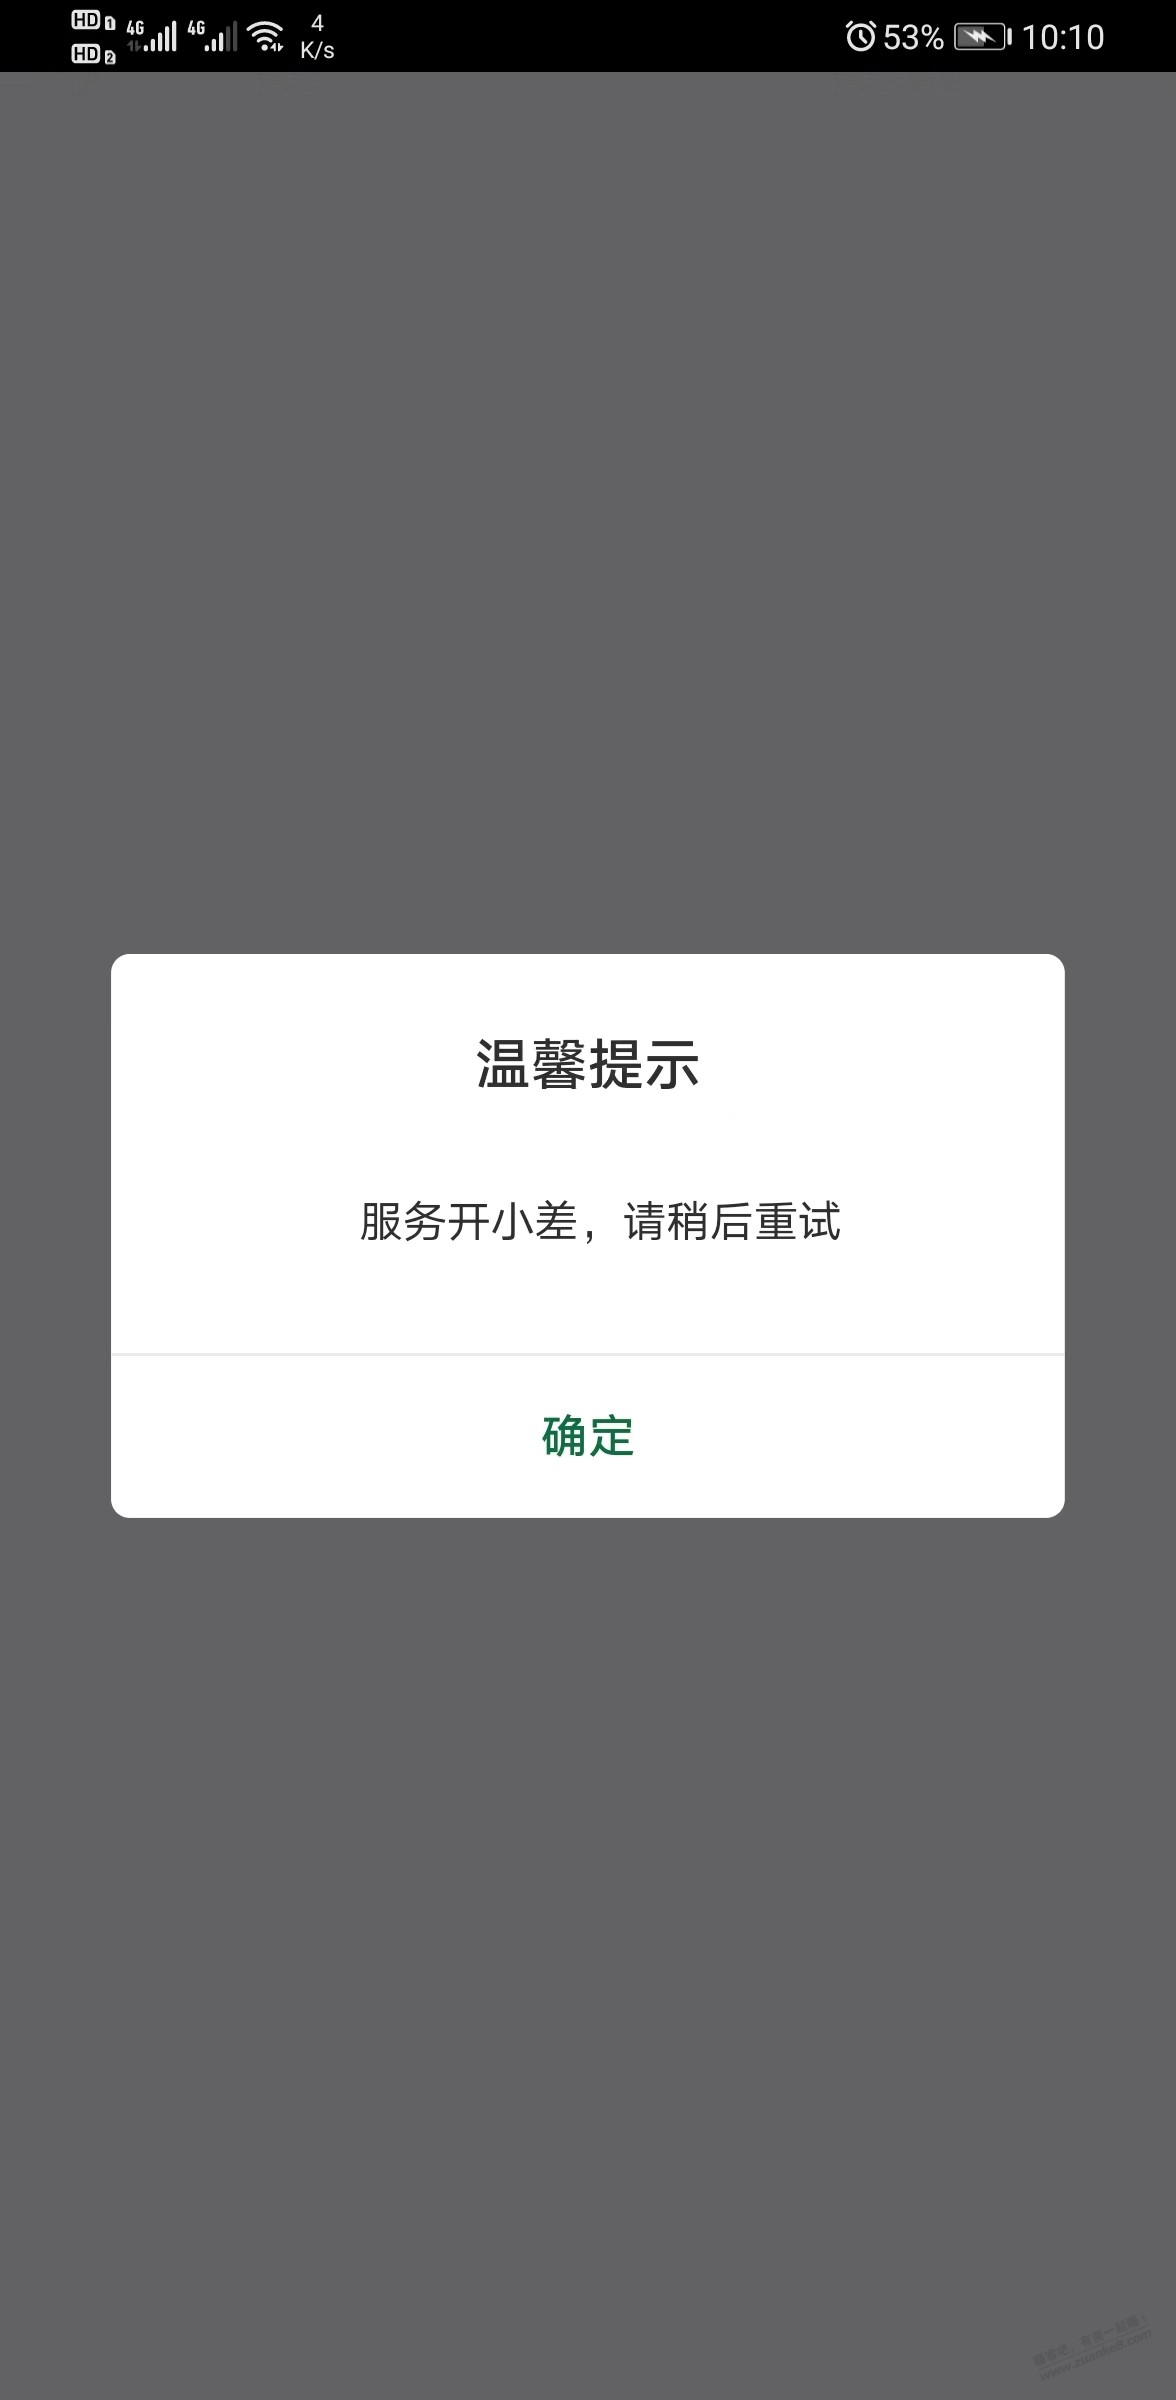 河南邮储APP签到有礼活动-今天0进去提示服务开小差-请稍后再试-惠小助(52huixz.com)